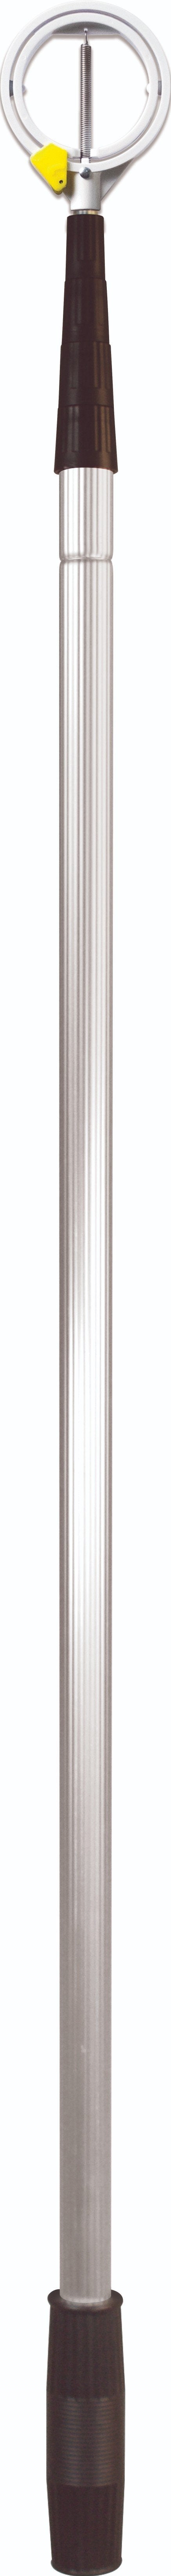 IGOTCHA Standard Aluminum Retriever